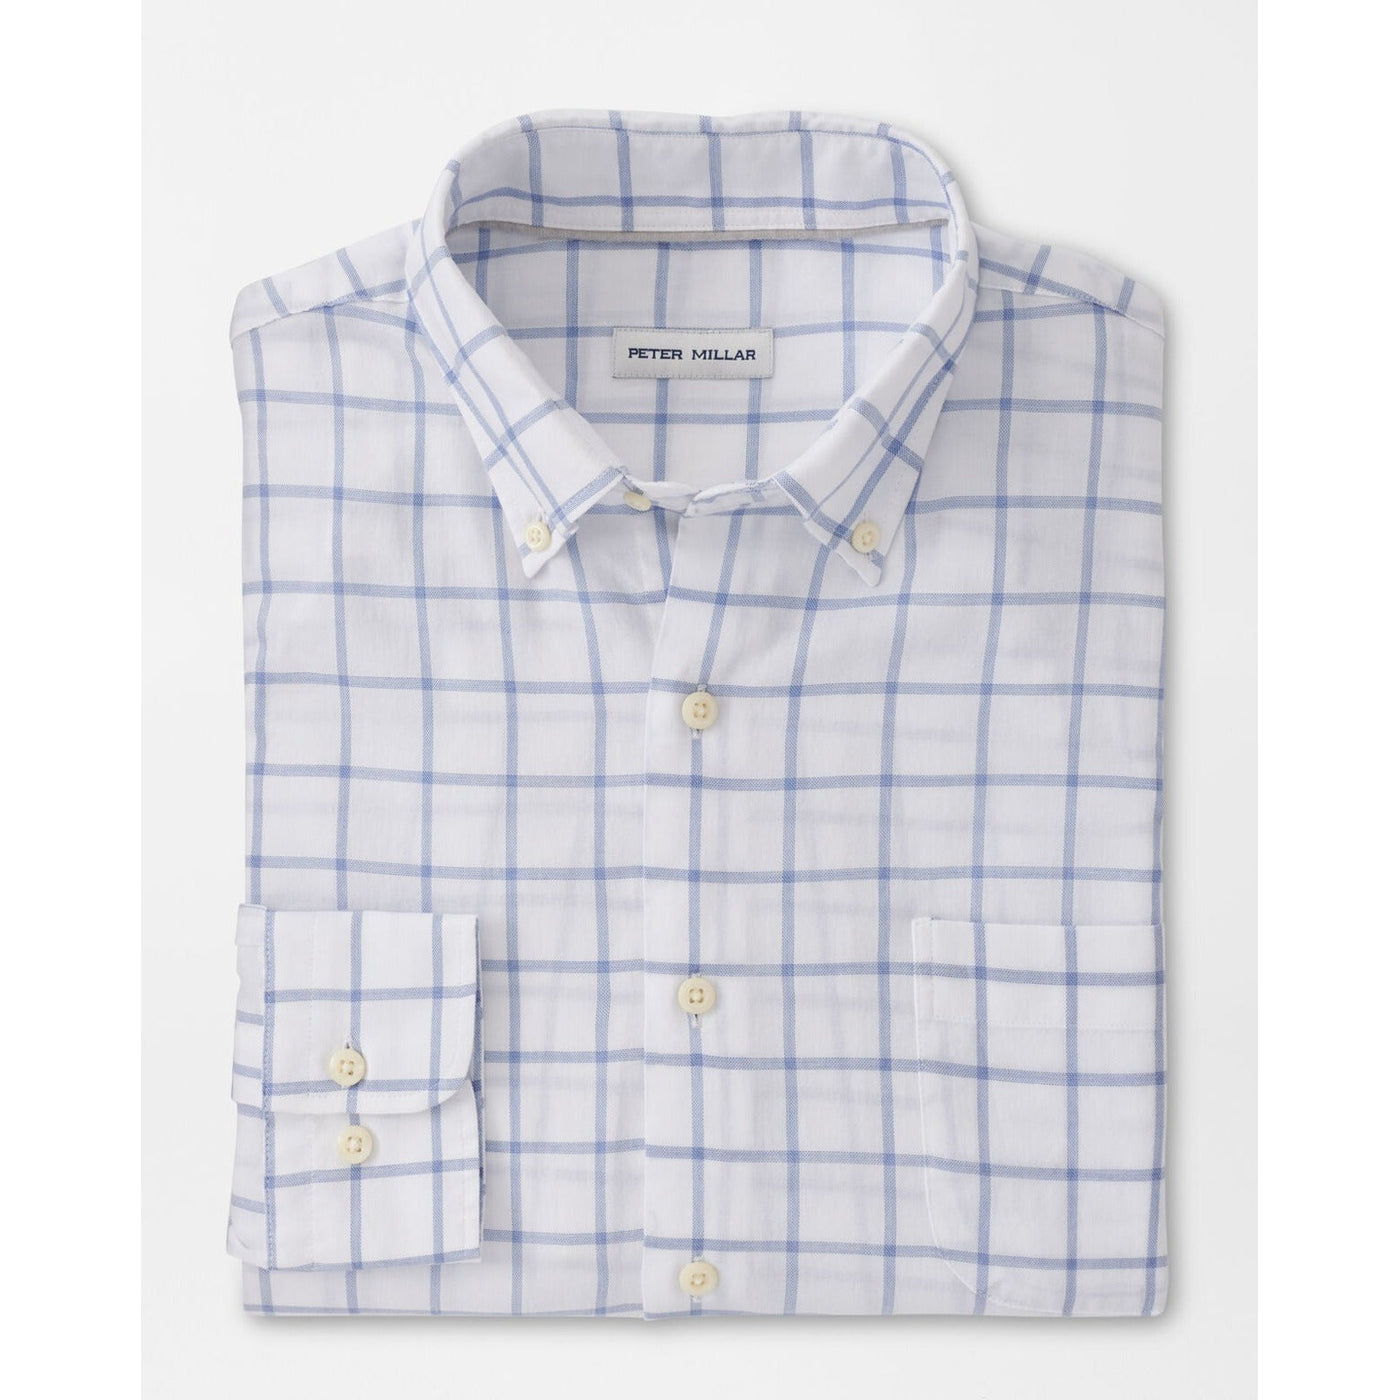 Peter Millar Gayle Summer Soft Cotton Sport Shirt-Men's Clothing-Kevin's Fine Outdoor Gear & Apparel